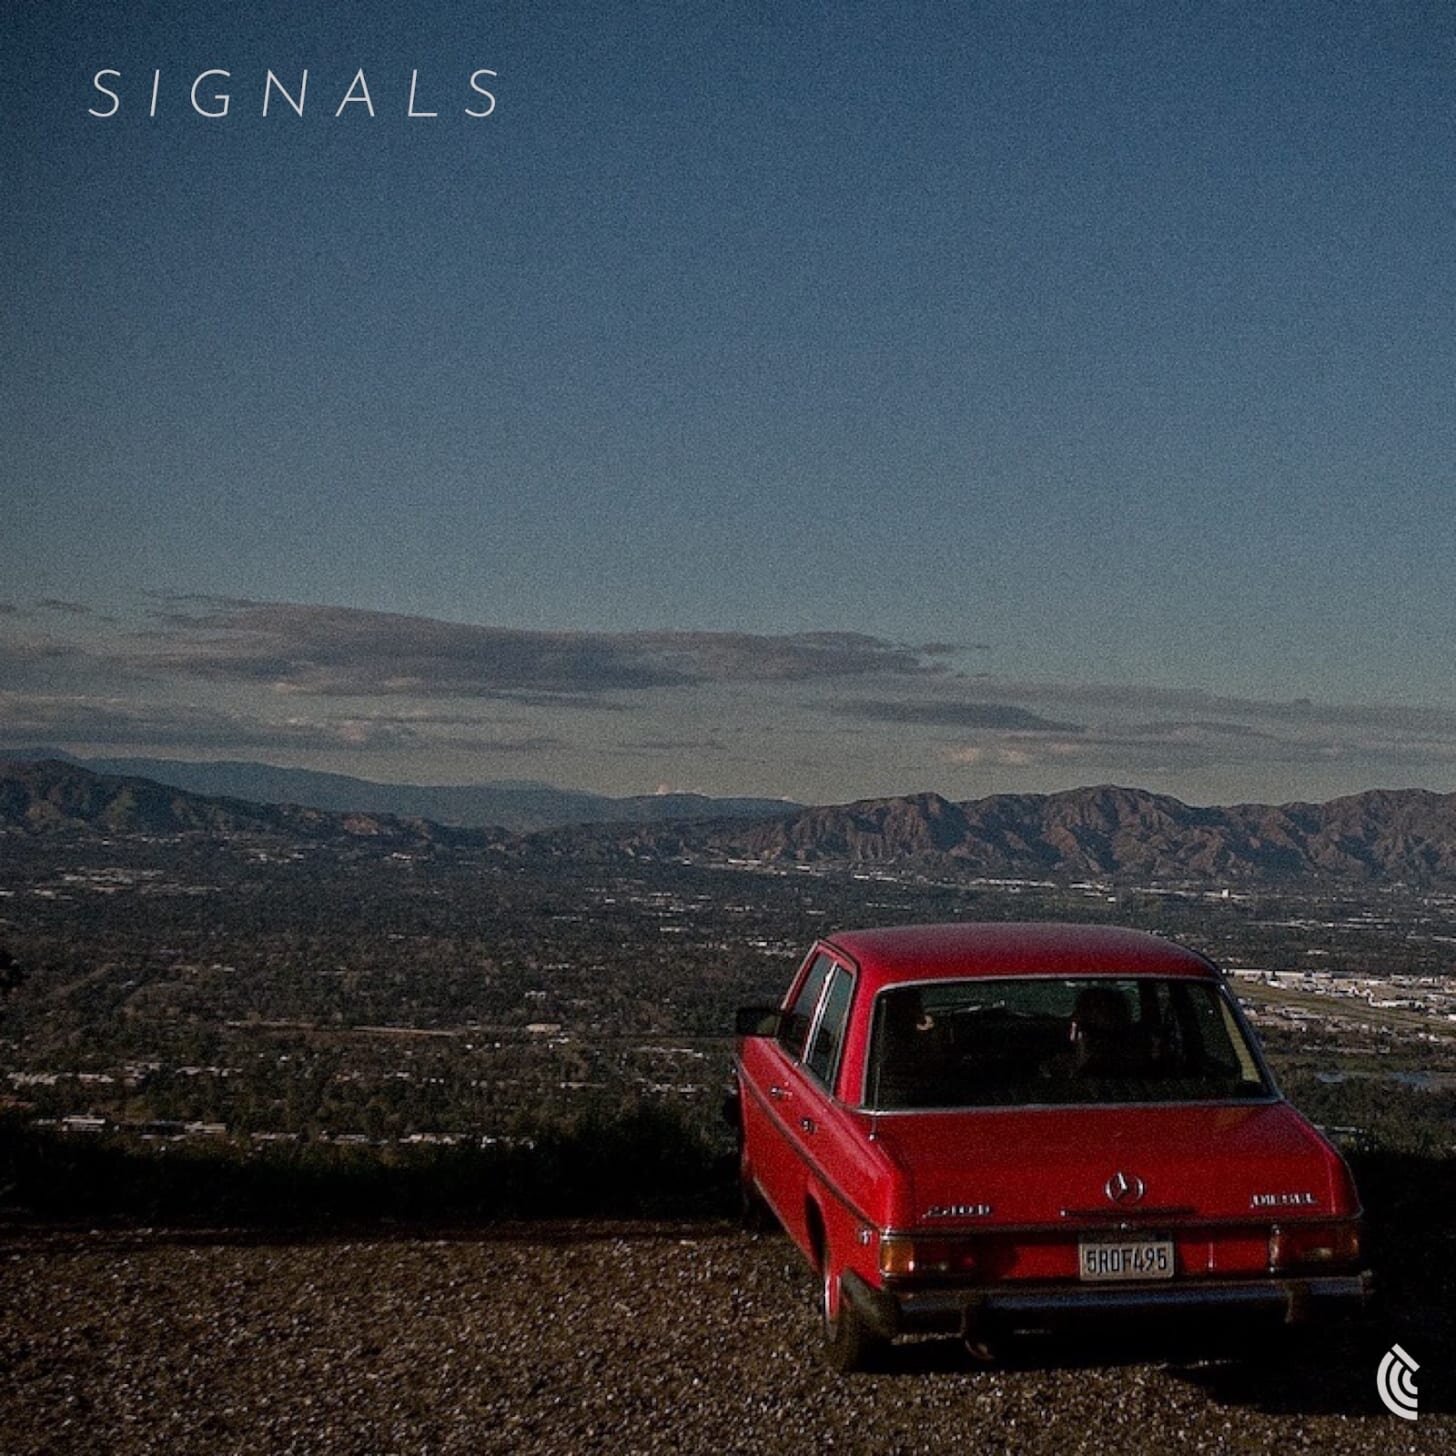 Signals by Kyle DeLash